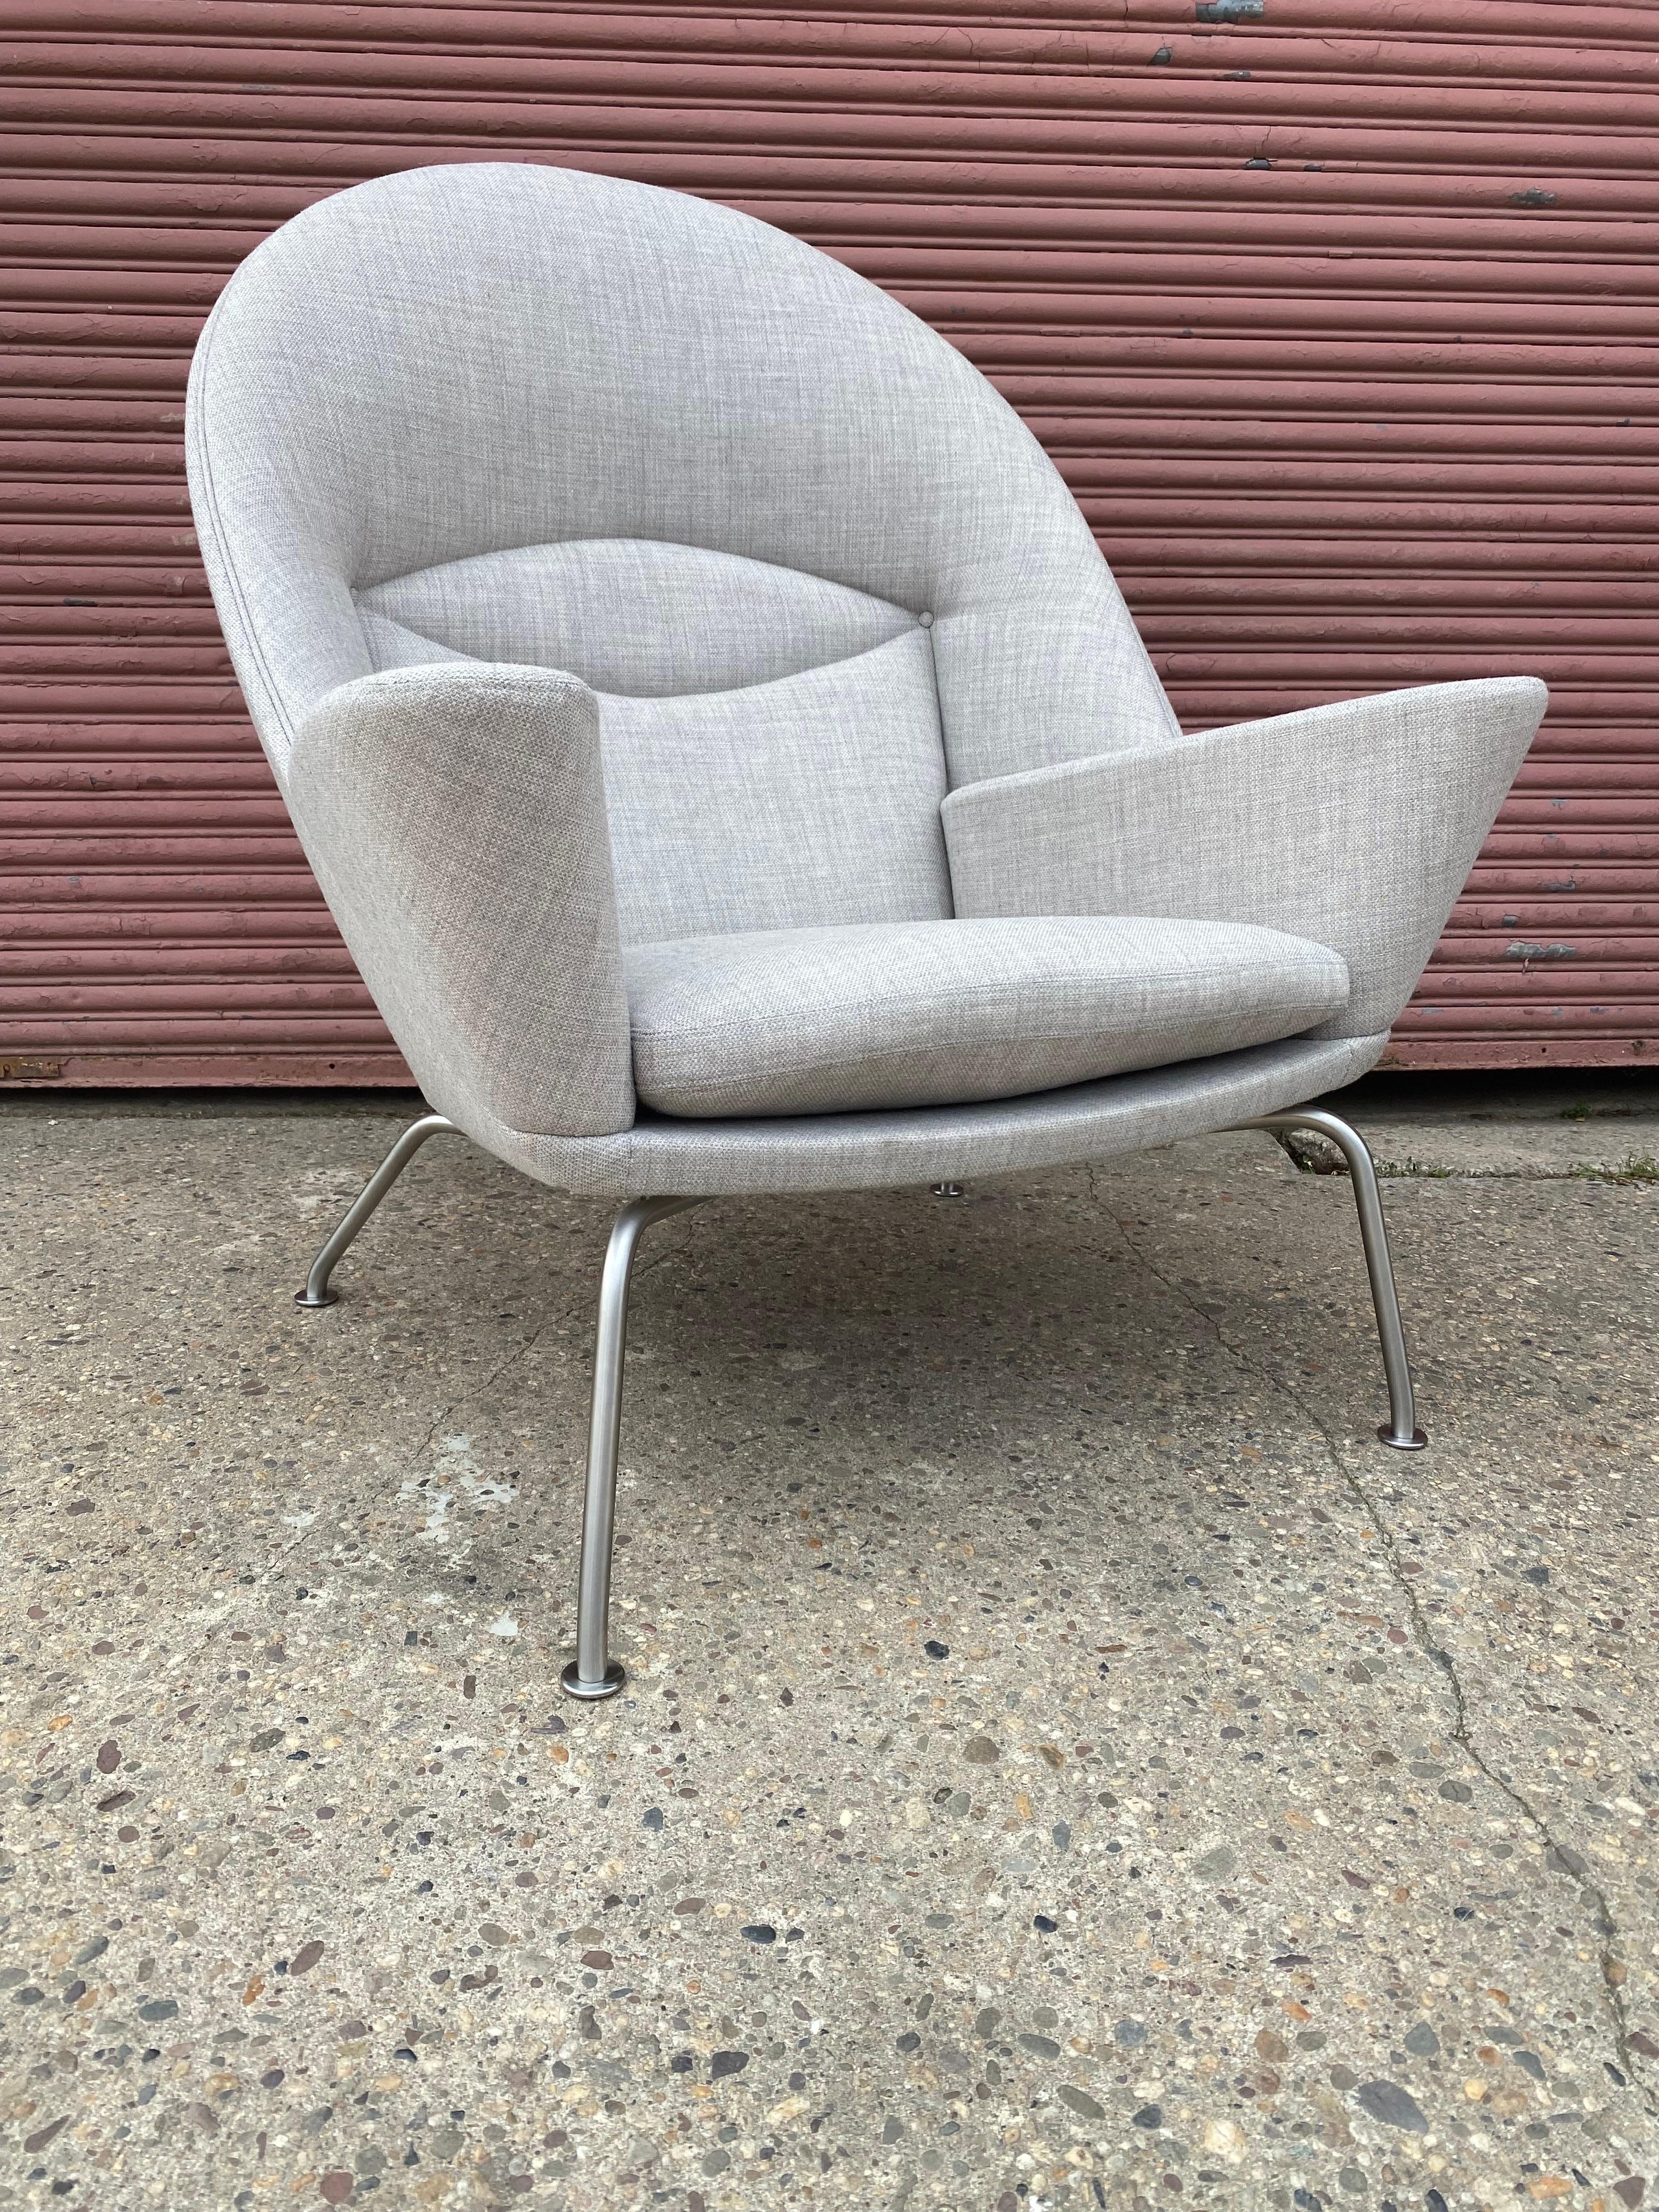 Hans Wegner für Carl Hansen CH468 Oculus Lounge Chair in neuwertigem Zustand!  Wurde in einem Musterhaus hauptsächlich für ein Fotoshooting verwendet.  Sehr sauberer Zustand in einem grauen Stoff.  Auch der Sockel aus Edelstahl ist sehr schön! 